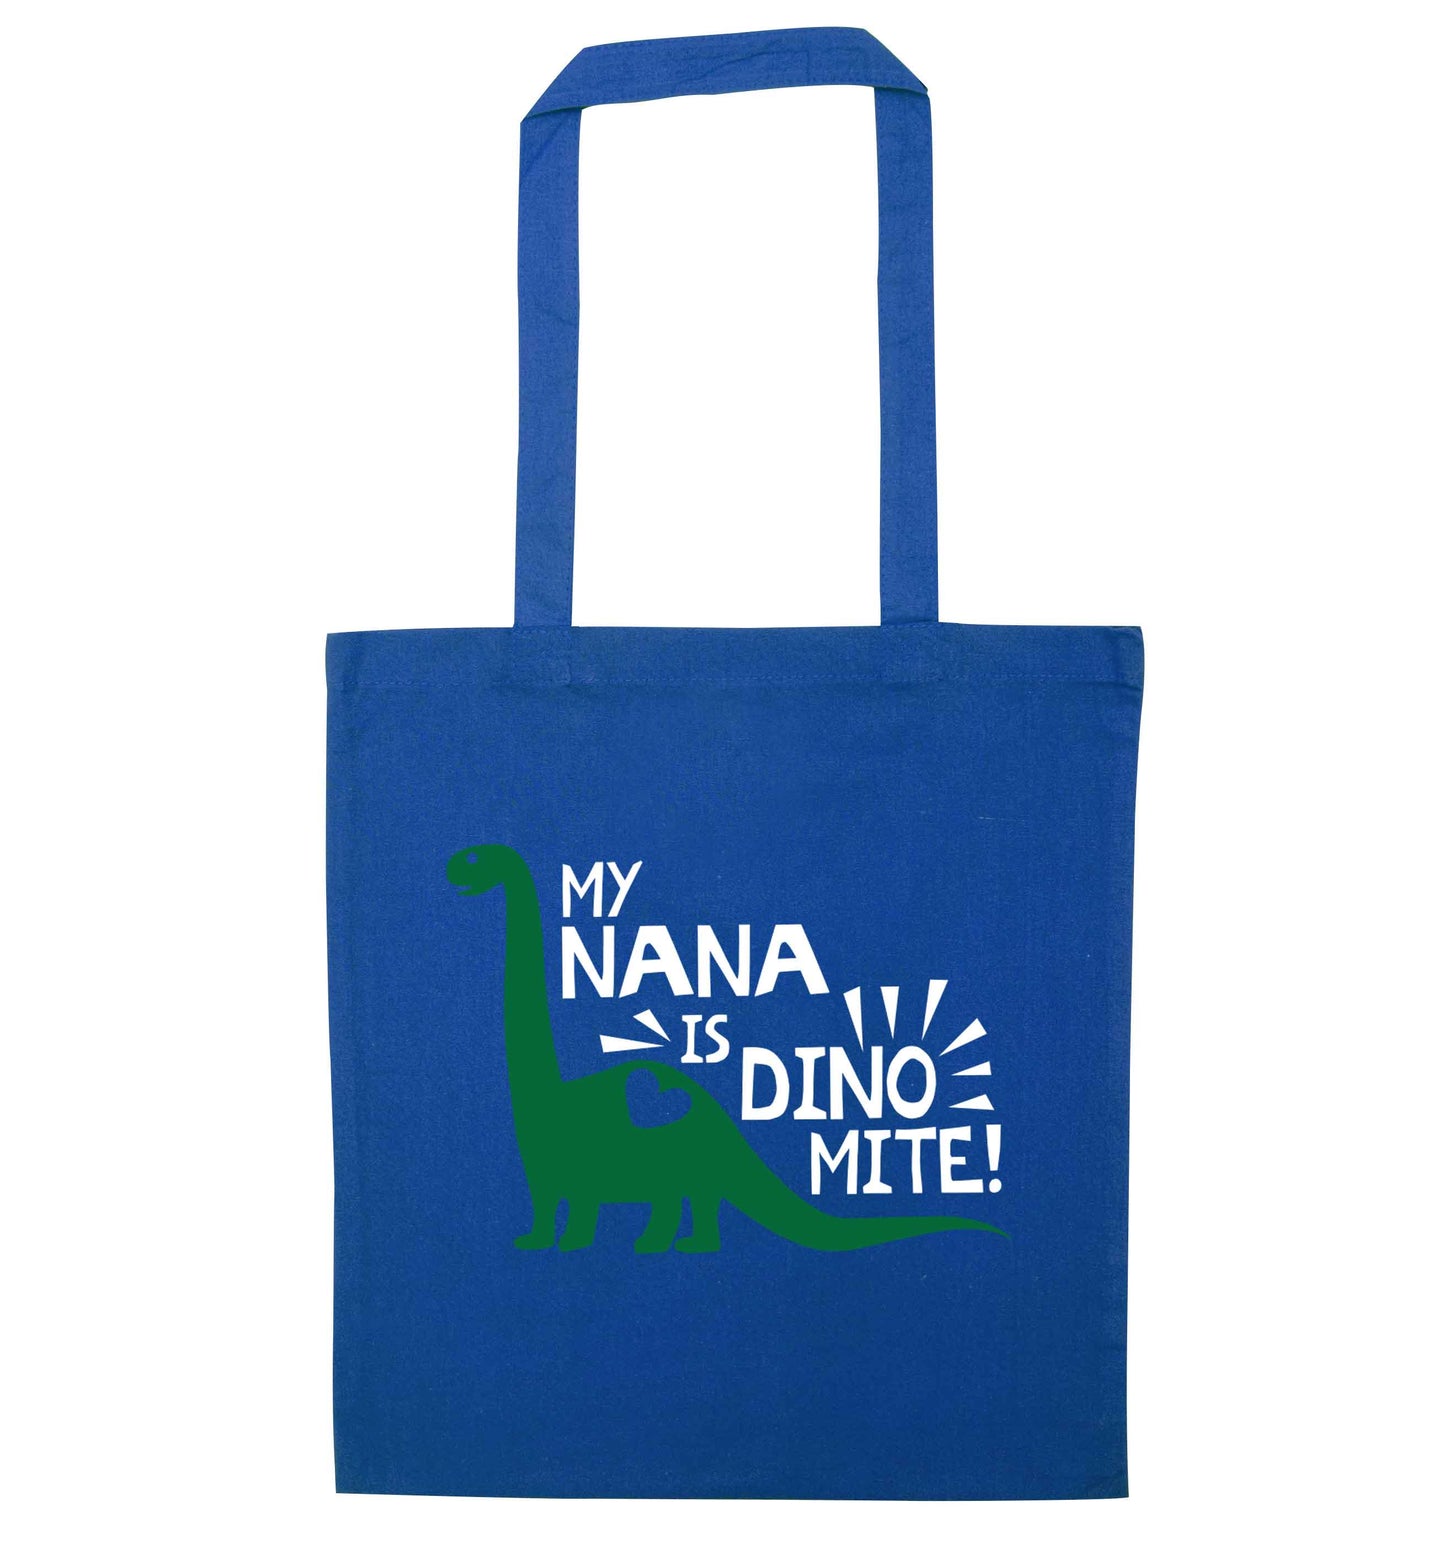 My nana is dinomite! blue tote bag